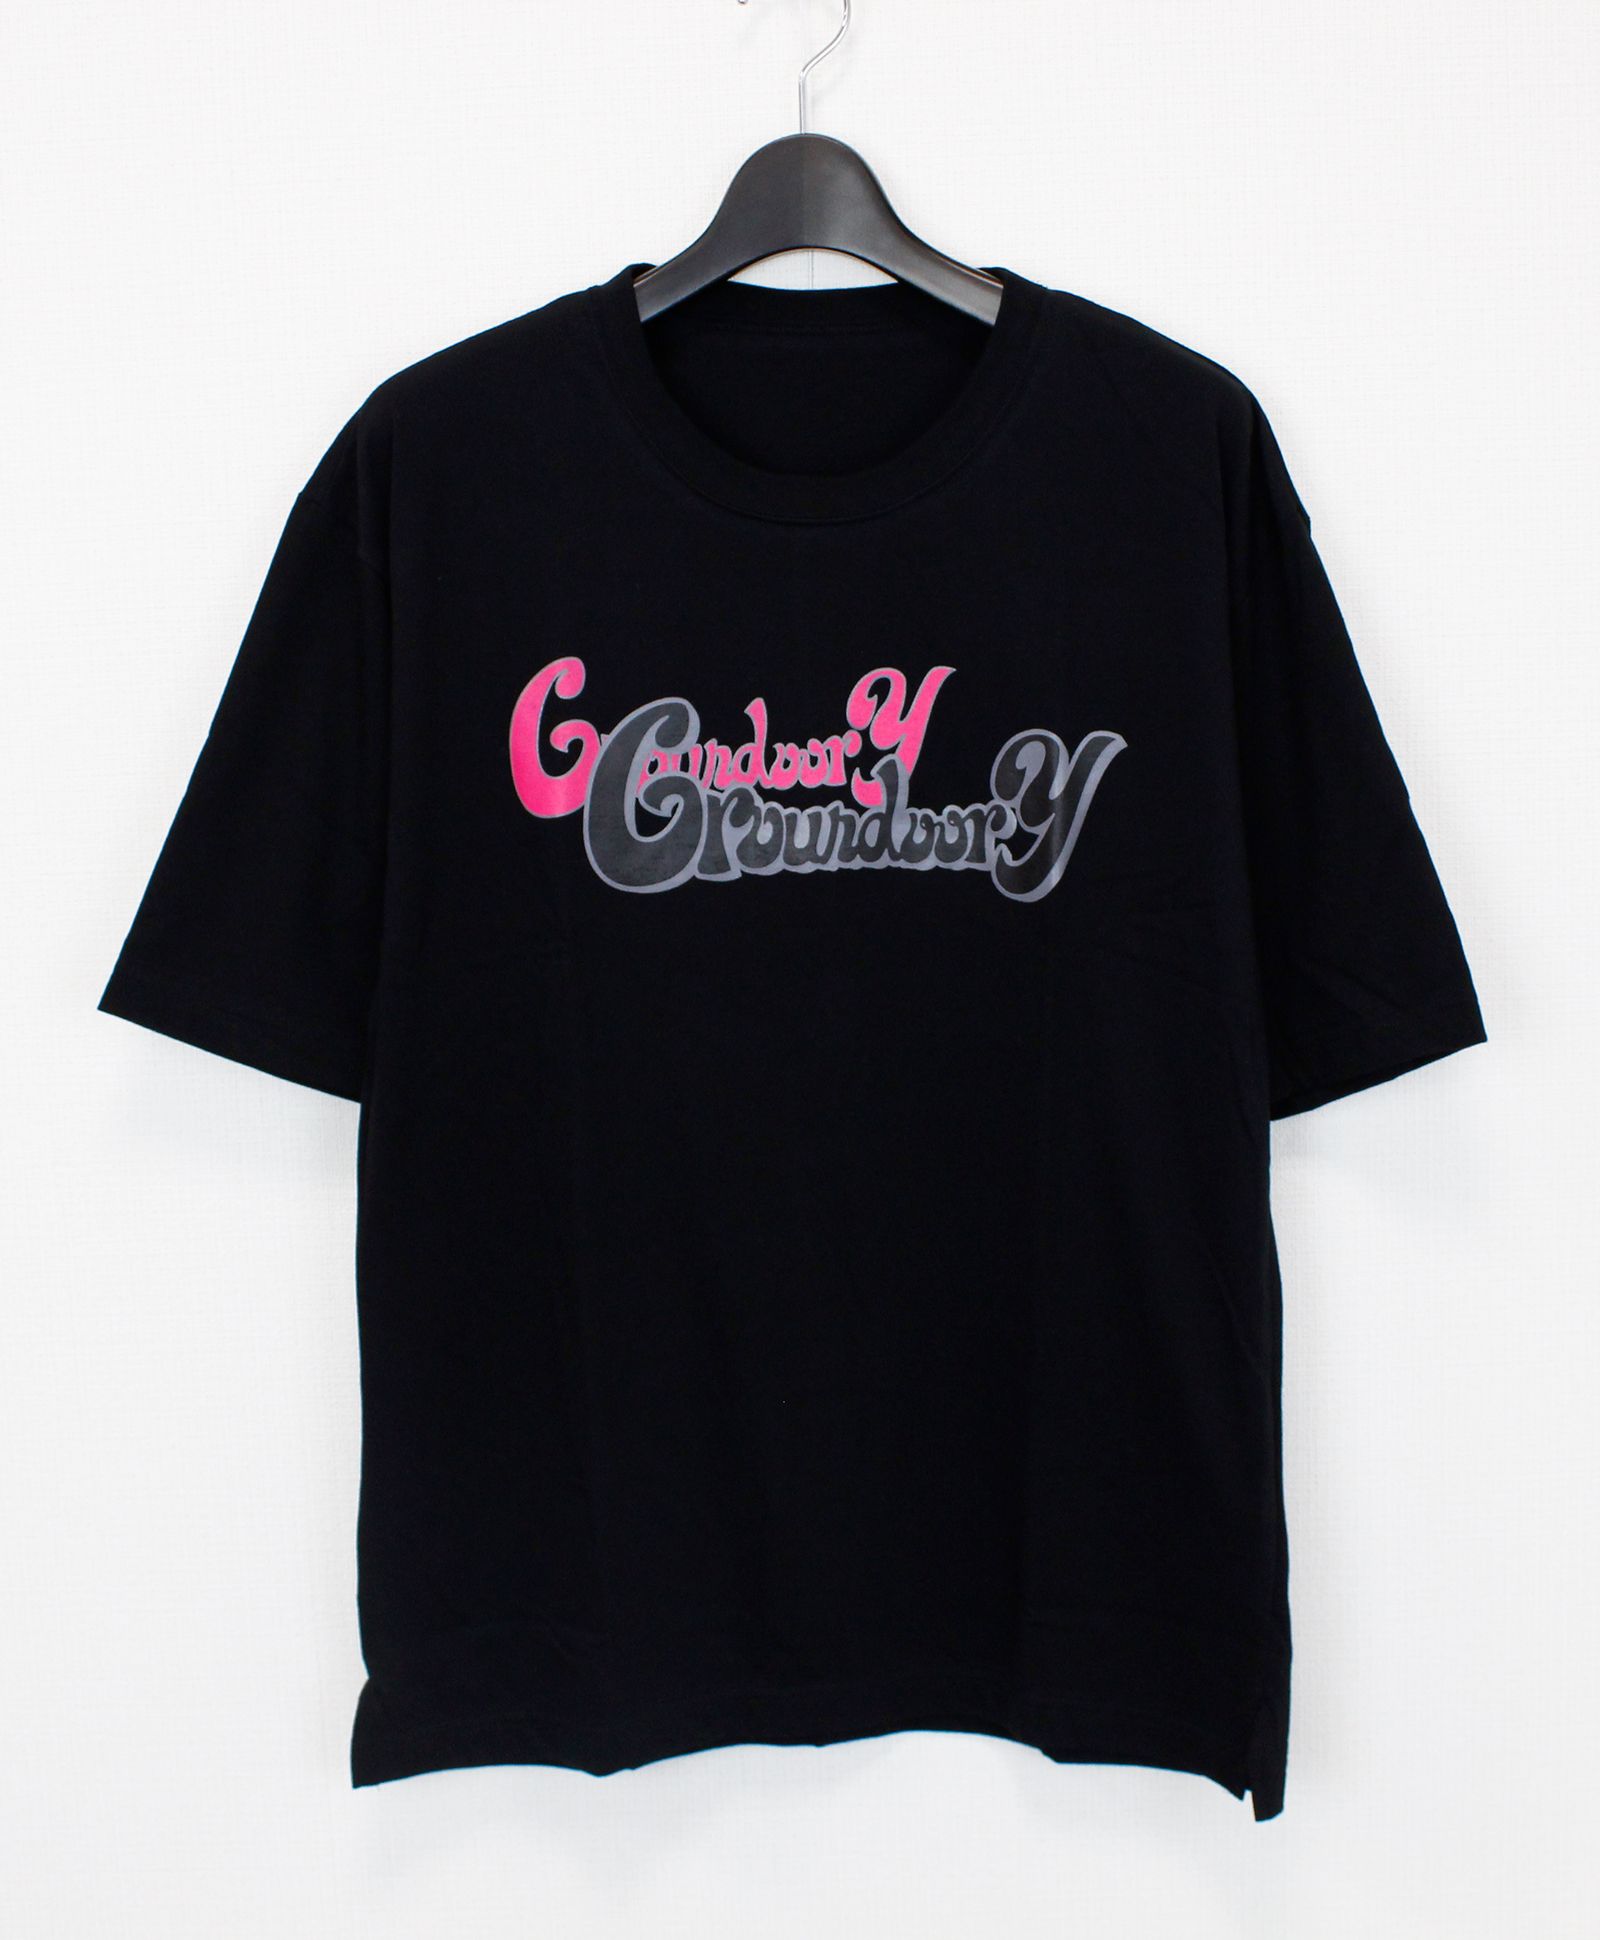 プリントTシャツ / GROUNDOOR Y LOGO COTTON PRINT TEE / BLACK [GJ-T50-070-1] - 3